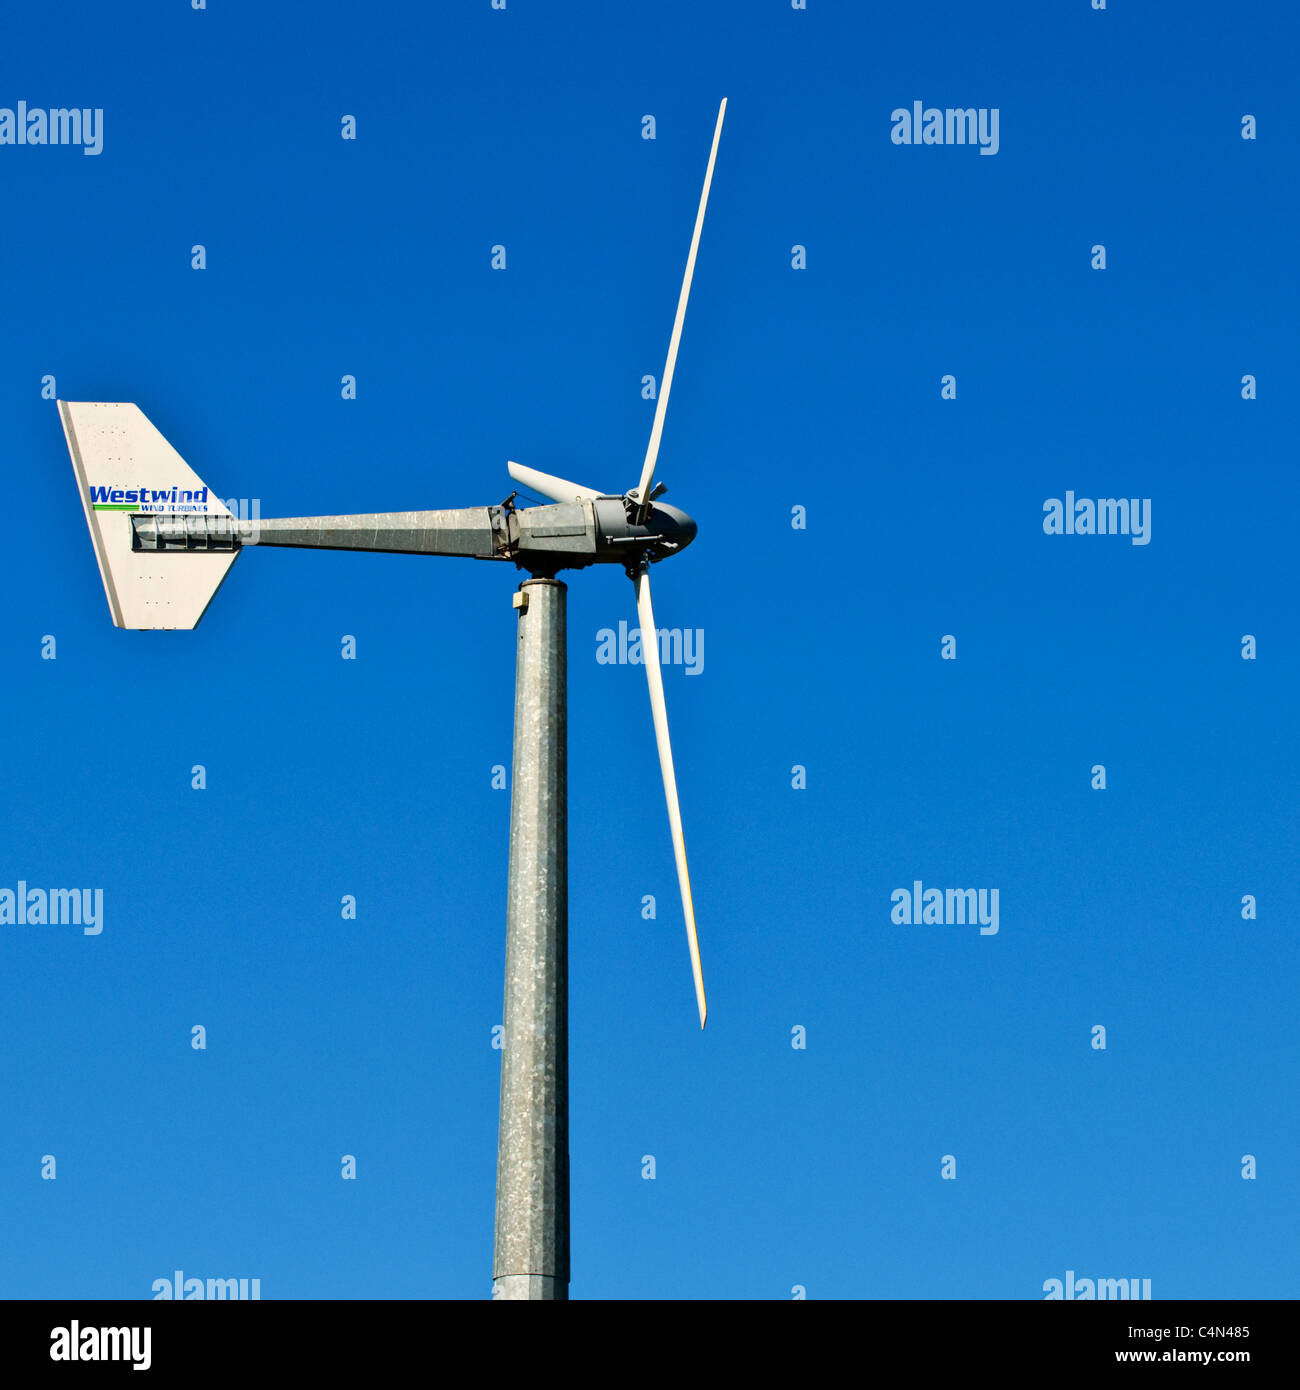 Une éolienne Westwind power électrique générateur de vent. Banque D'Images